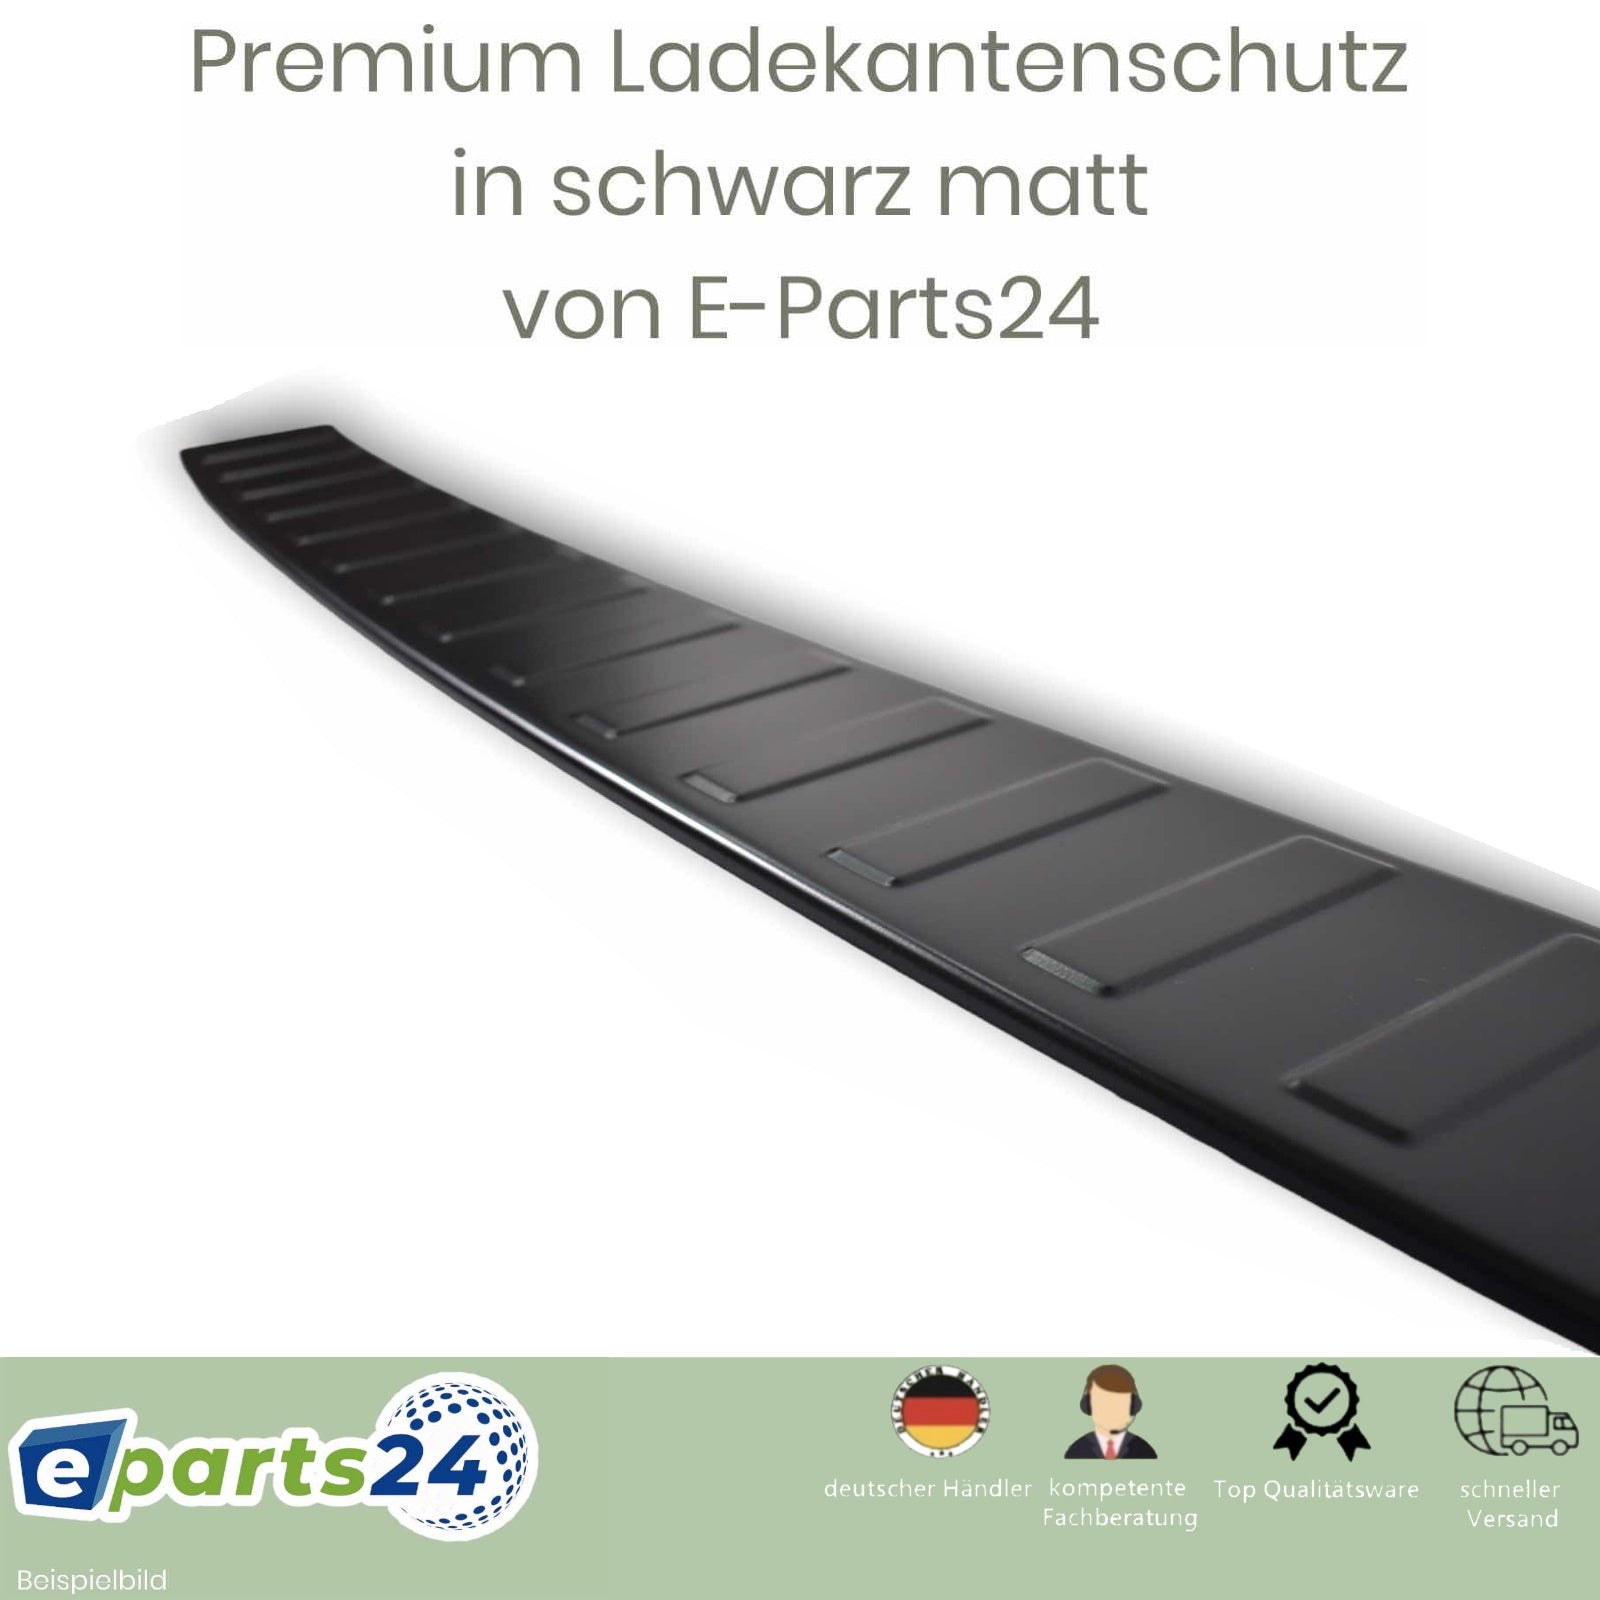 Ladekantenschutz für Seat Leon E-Parts24 Kombi ab Edelsta 3 ST 5F FR – Cupra 2014